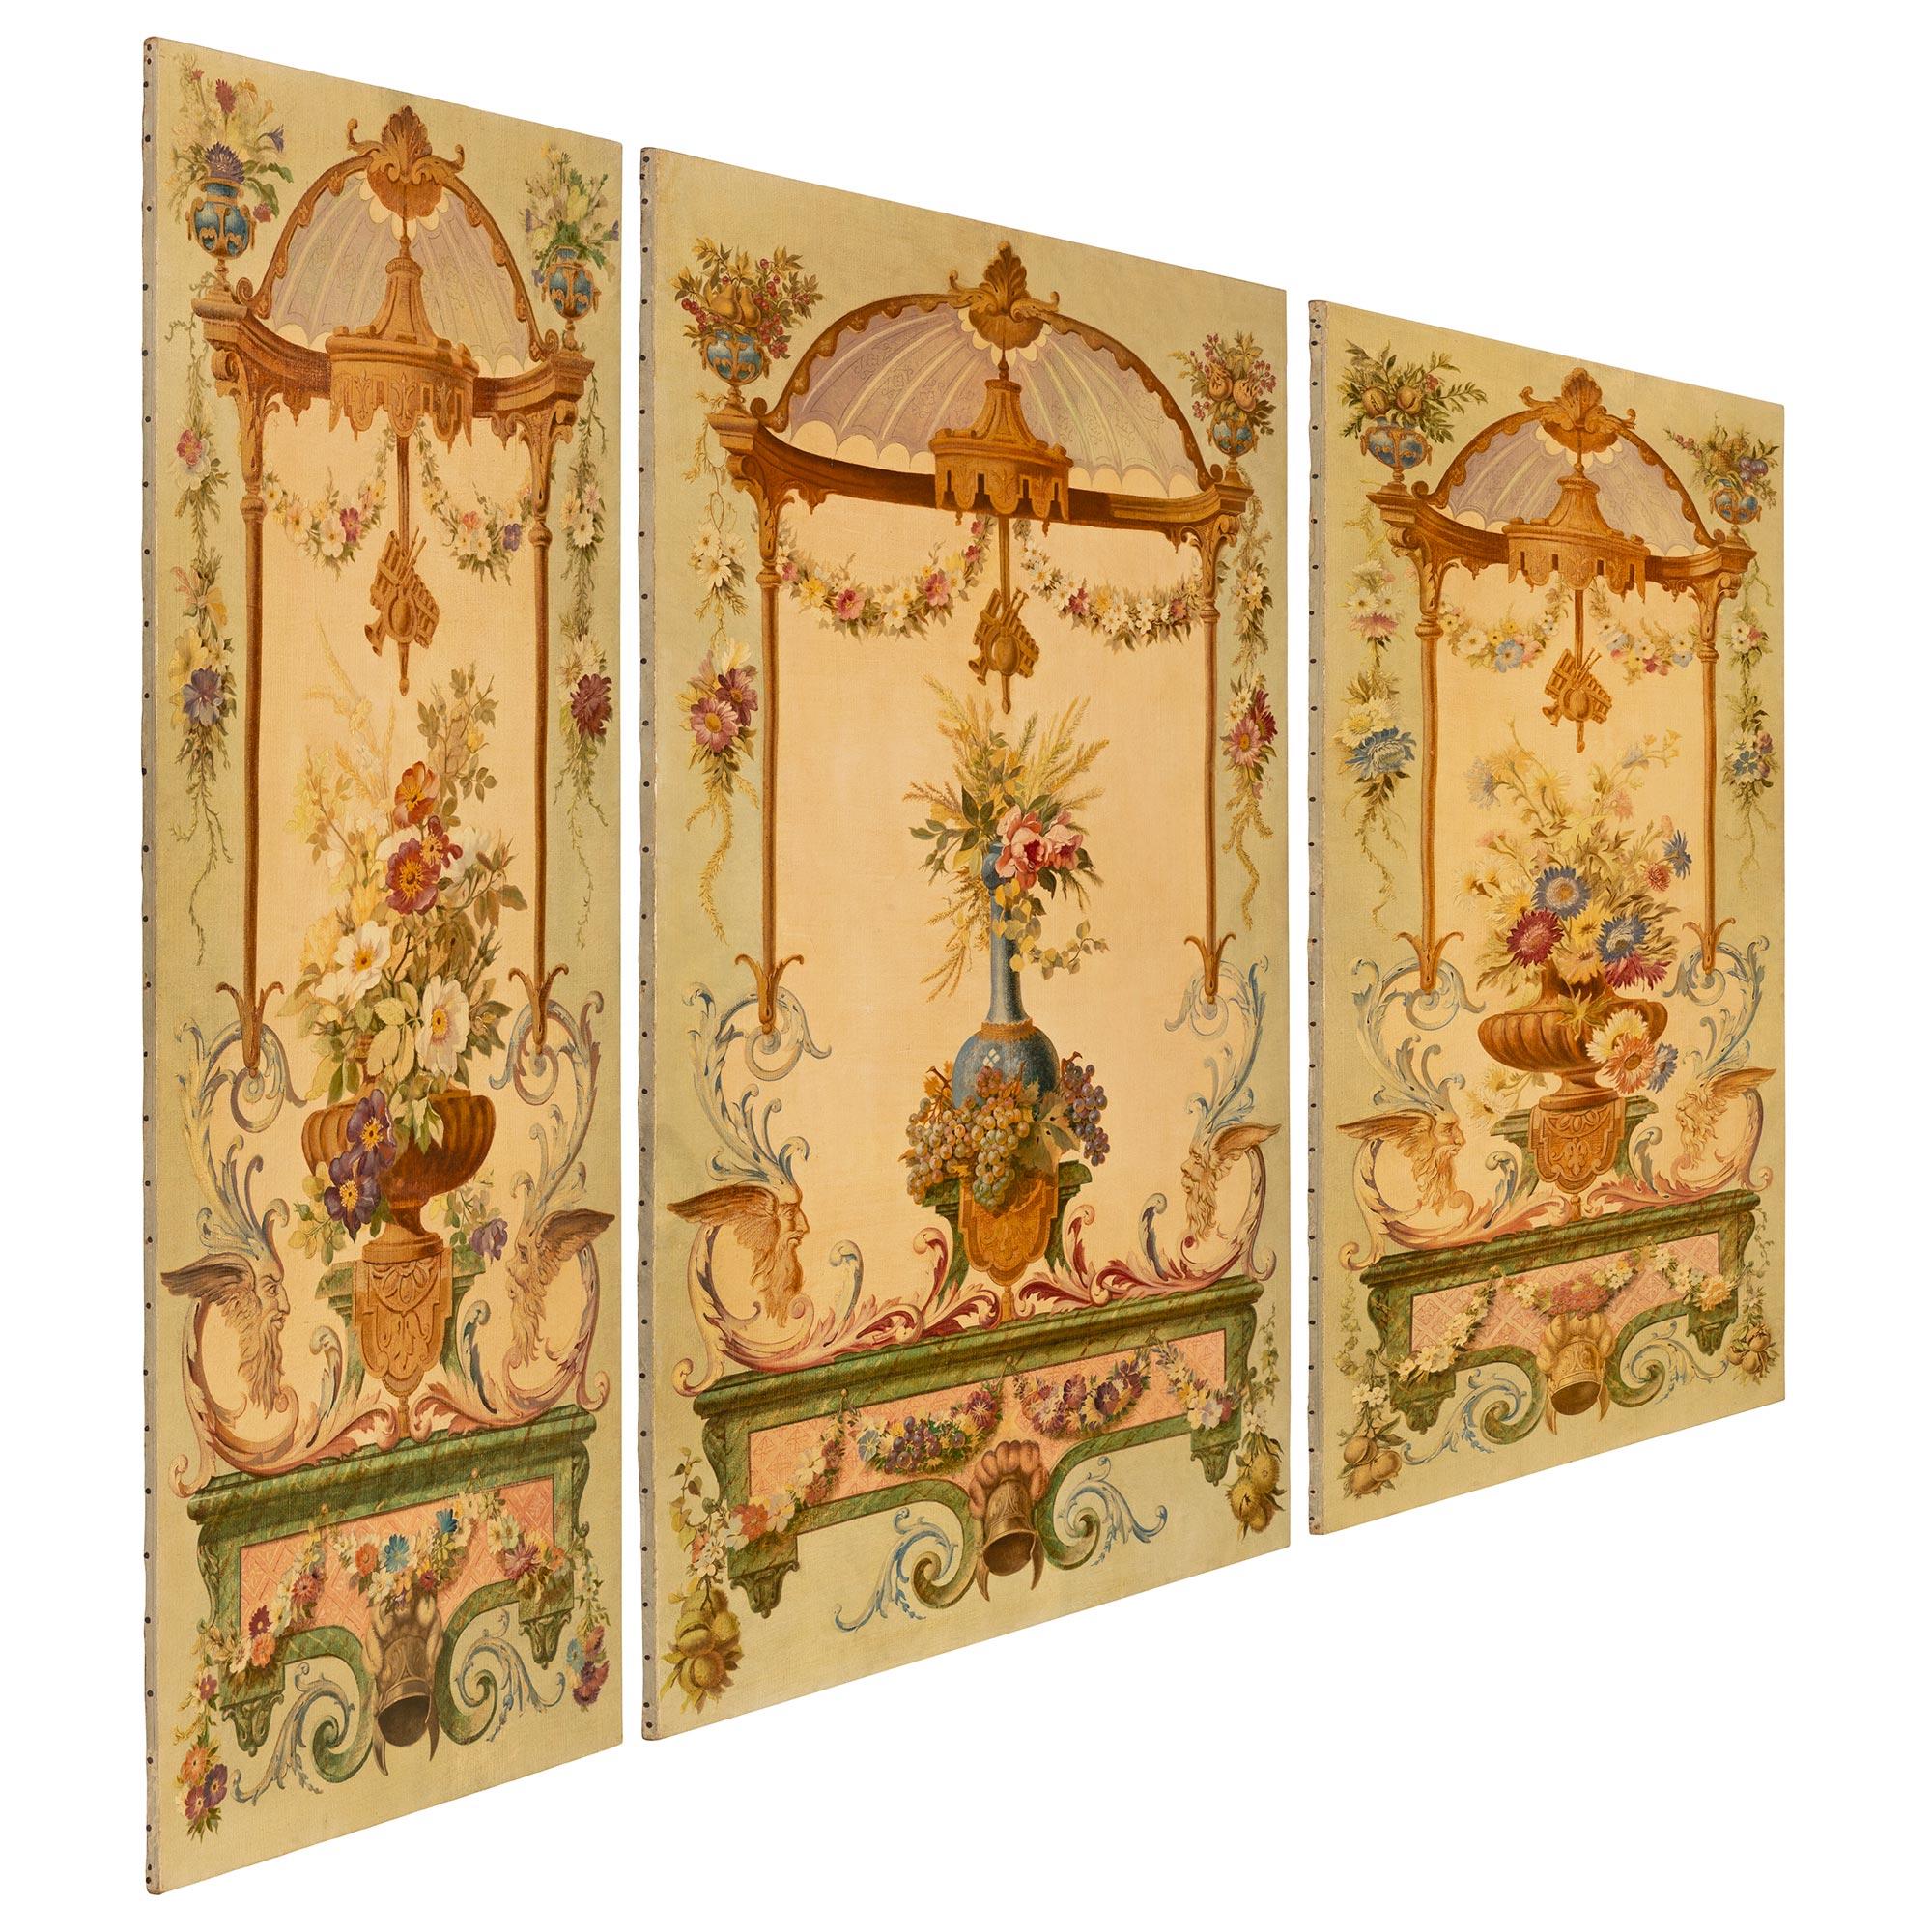 Ein auffallendes und sehr elegantes Set aus drei kontinentalen, handbemalten dekorativen Wandtafeln aus der Jahrhundertwende im Stil Louis XVI. Jedes rechteckige Paneel zeigt schöne, fein detaillierte, handgemalte, verschnörkelte Blattmuster und